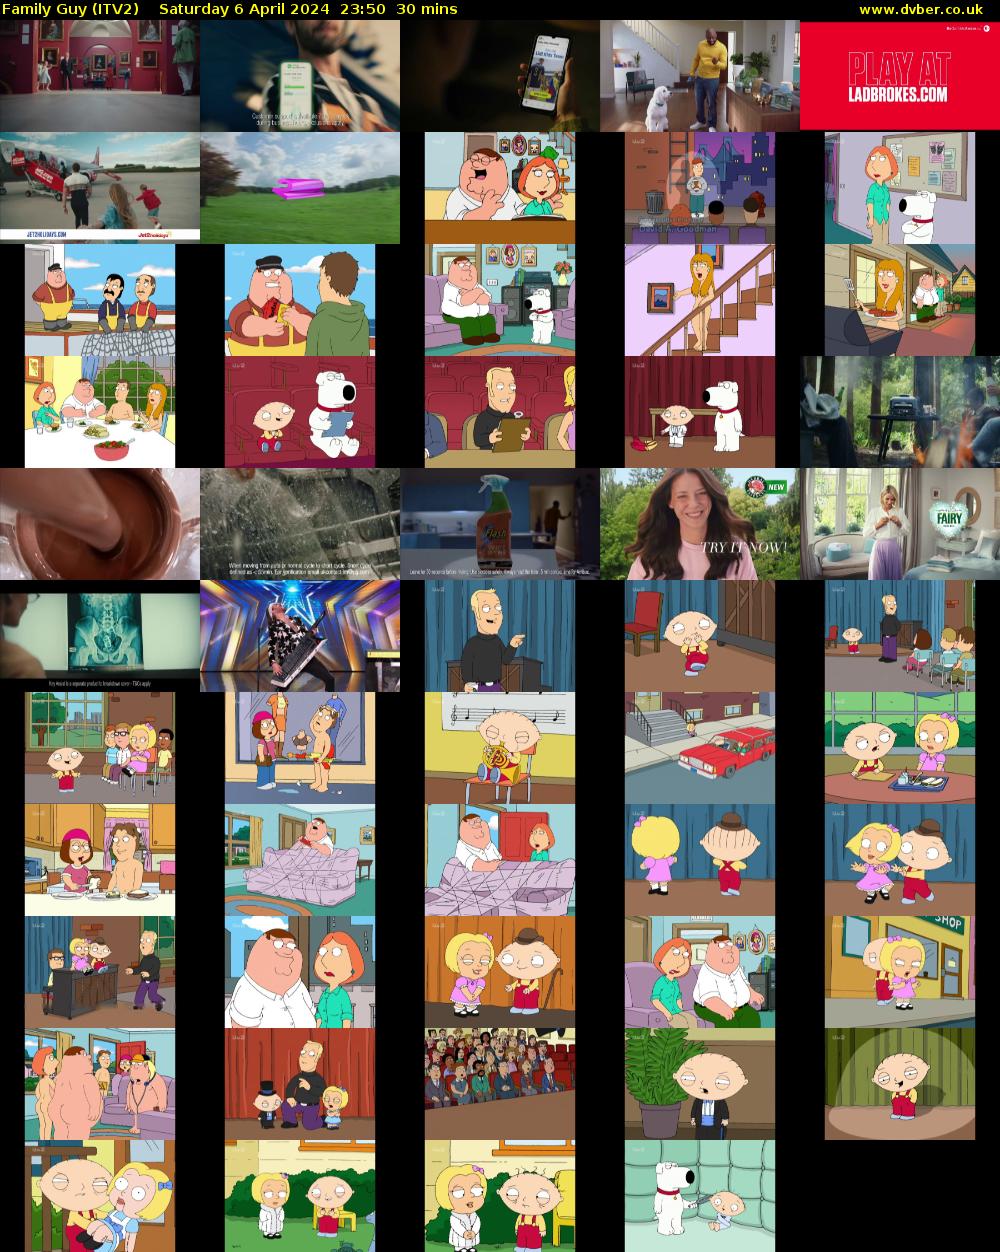 Family Guy (ITV2) Saturday 6 April 2024 23:50 - 00:20